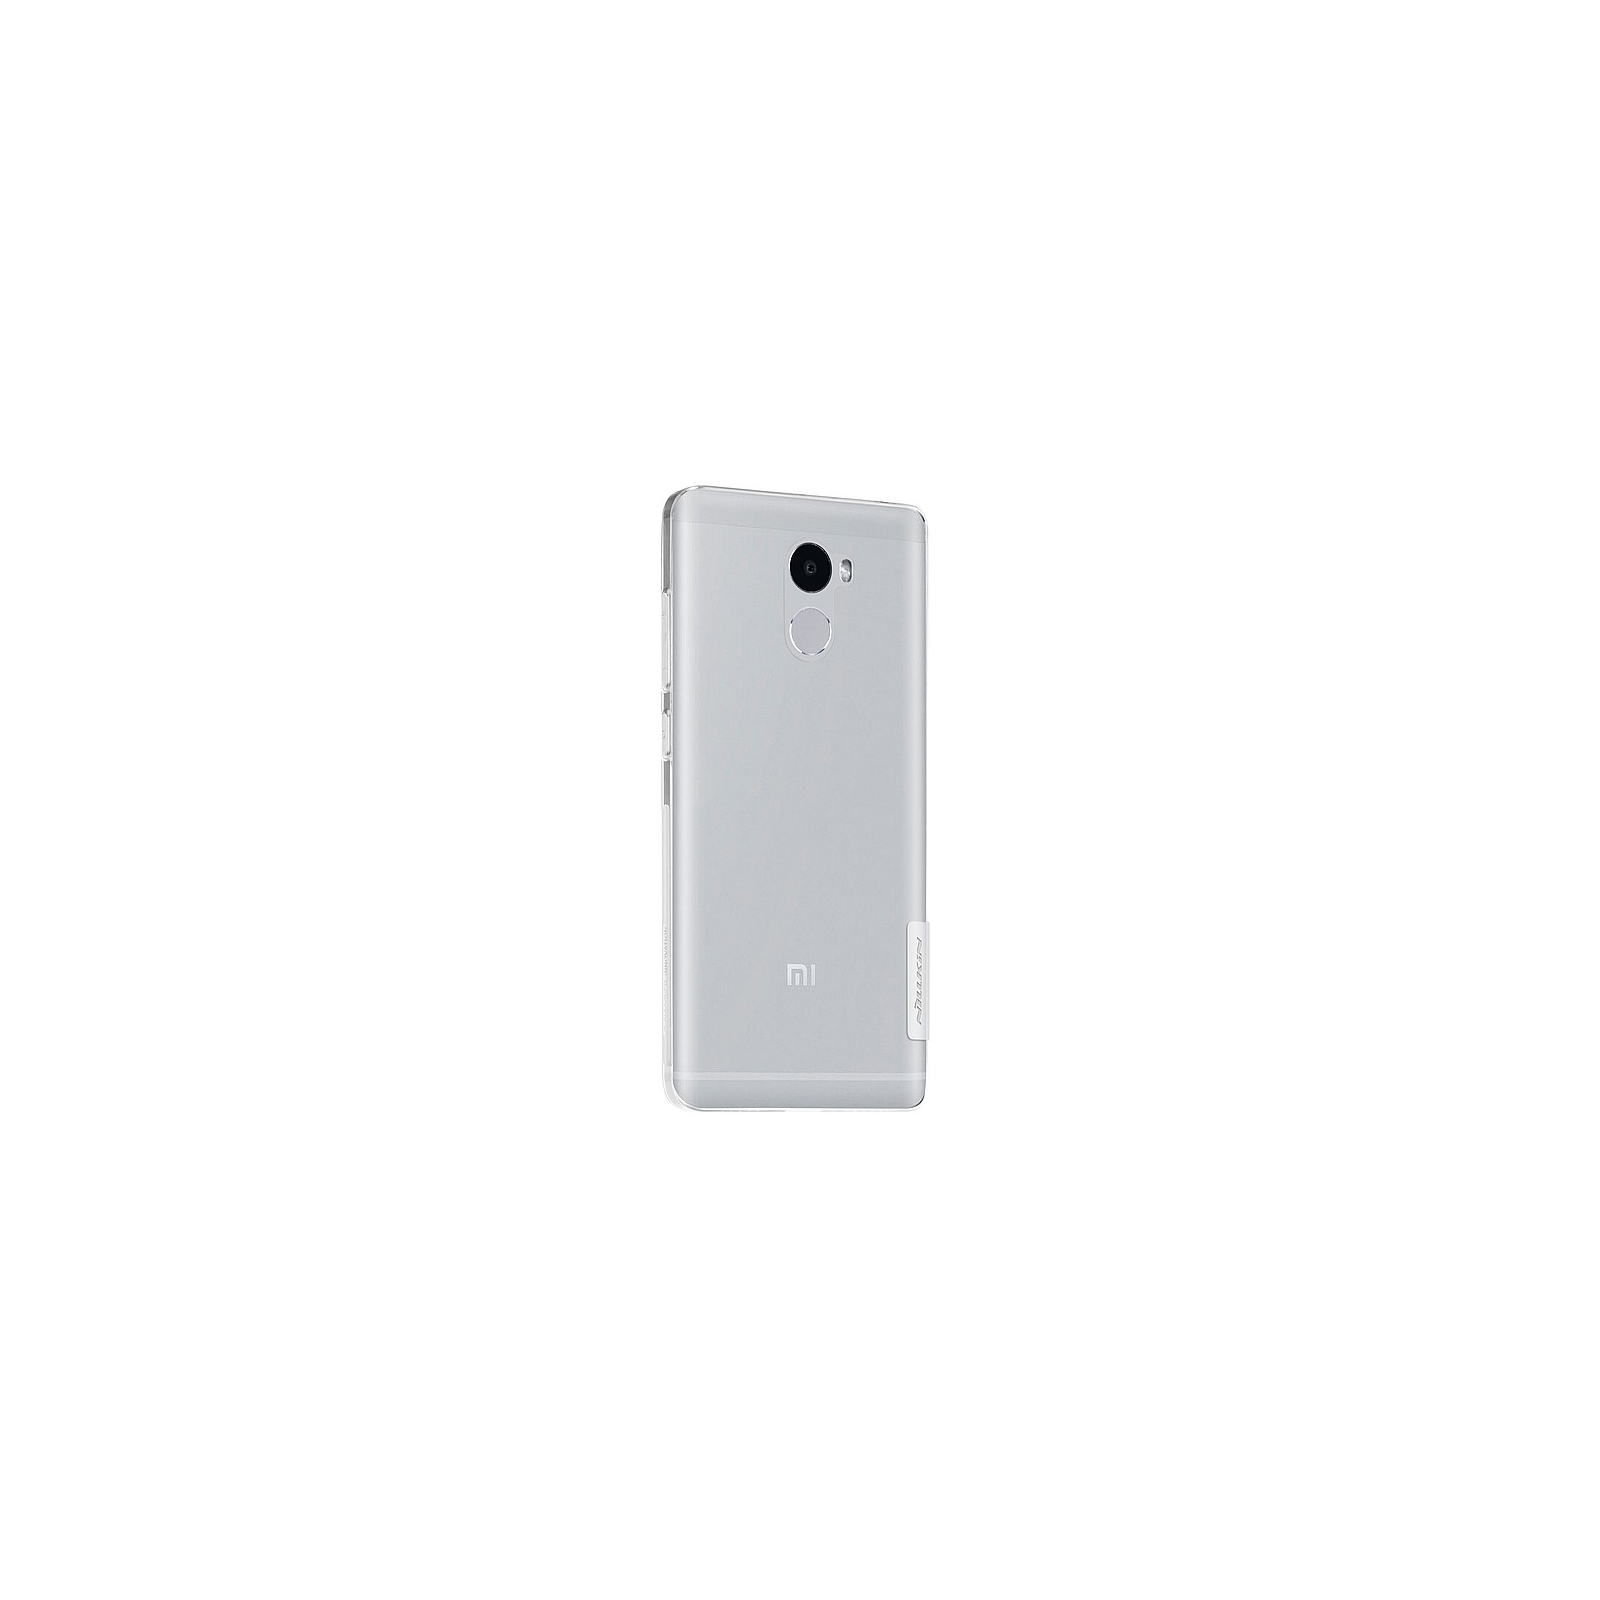 Чехол для мобильного телефона Nillkin для Xiaomi Redmi 4 - Nature TPU (White) (6318306) изображение 3